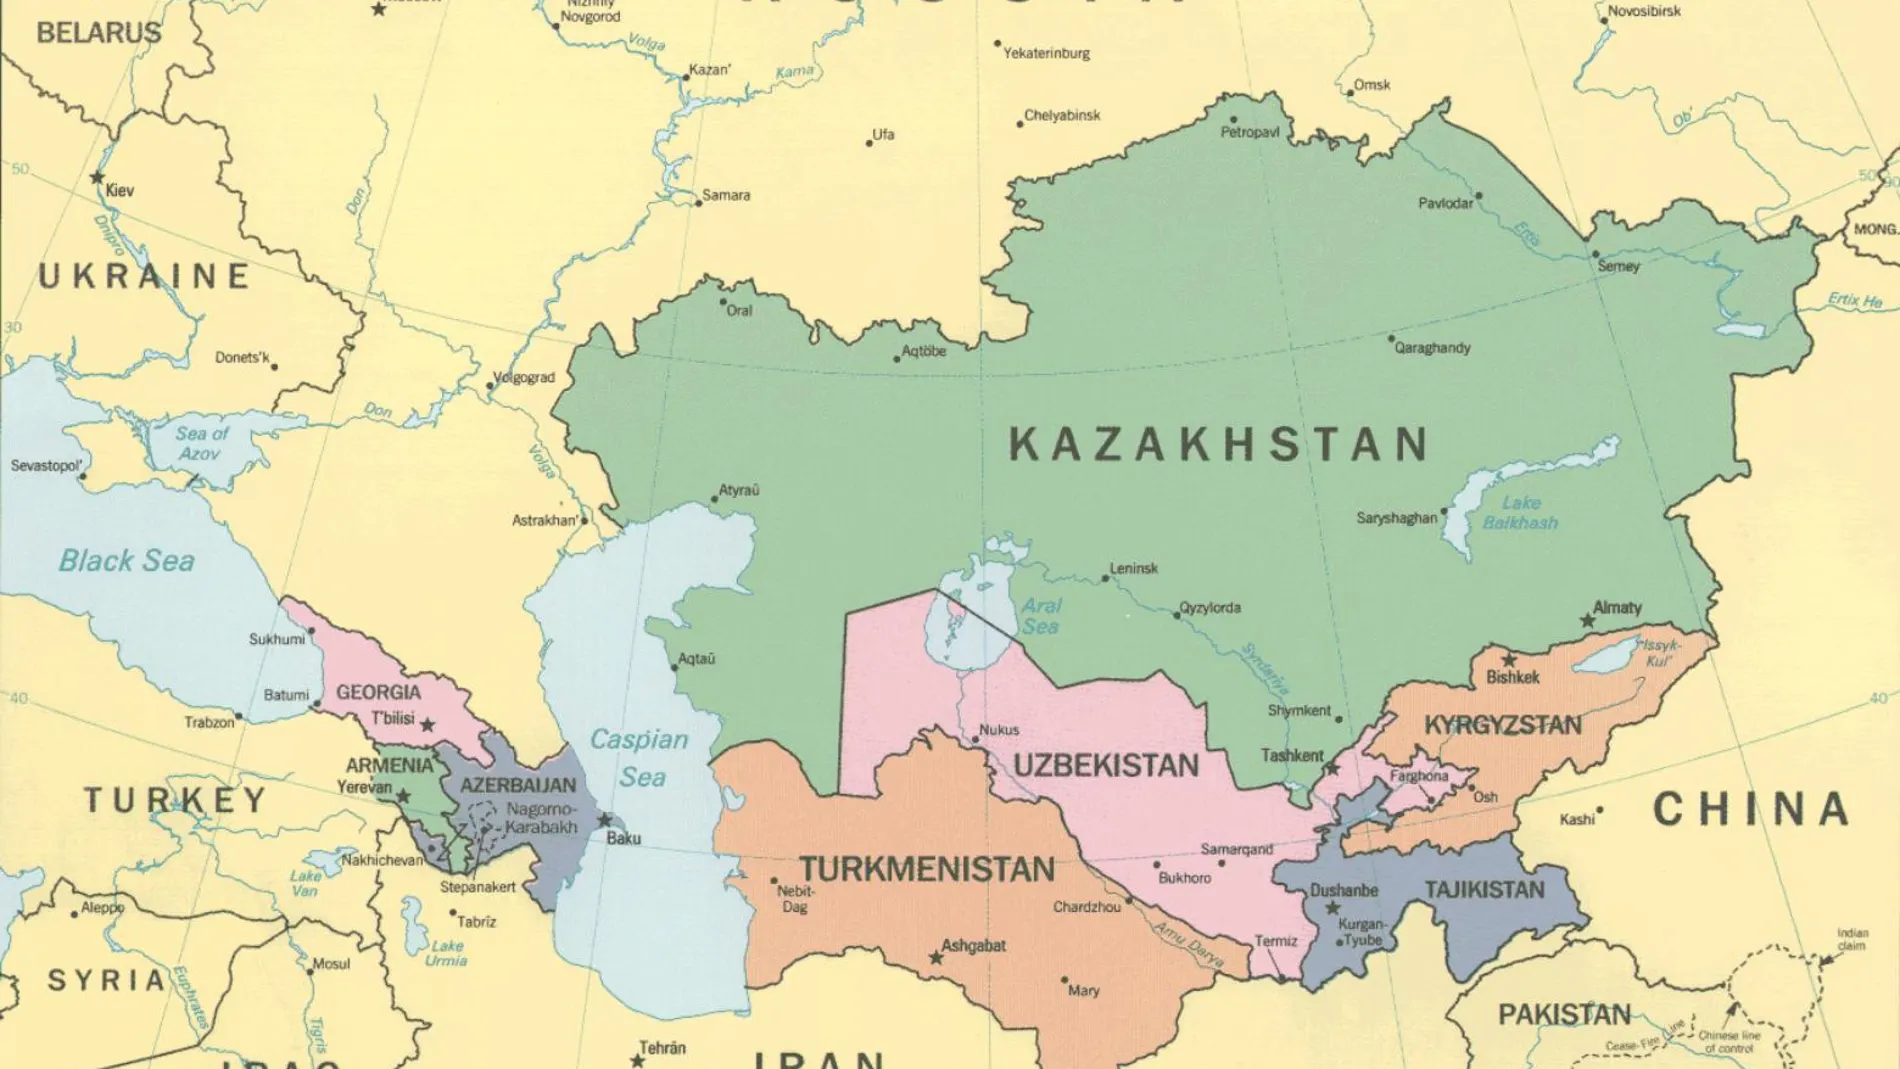 Kazajistán ha demostrado ser un socio fiable en la lucha contra el terrorismo y la delincuencia organizada durante los últimos 20 años